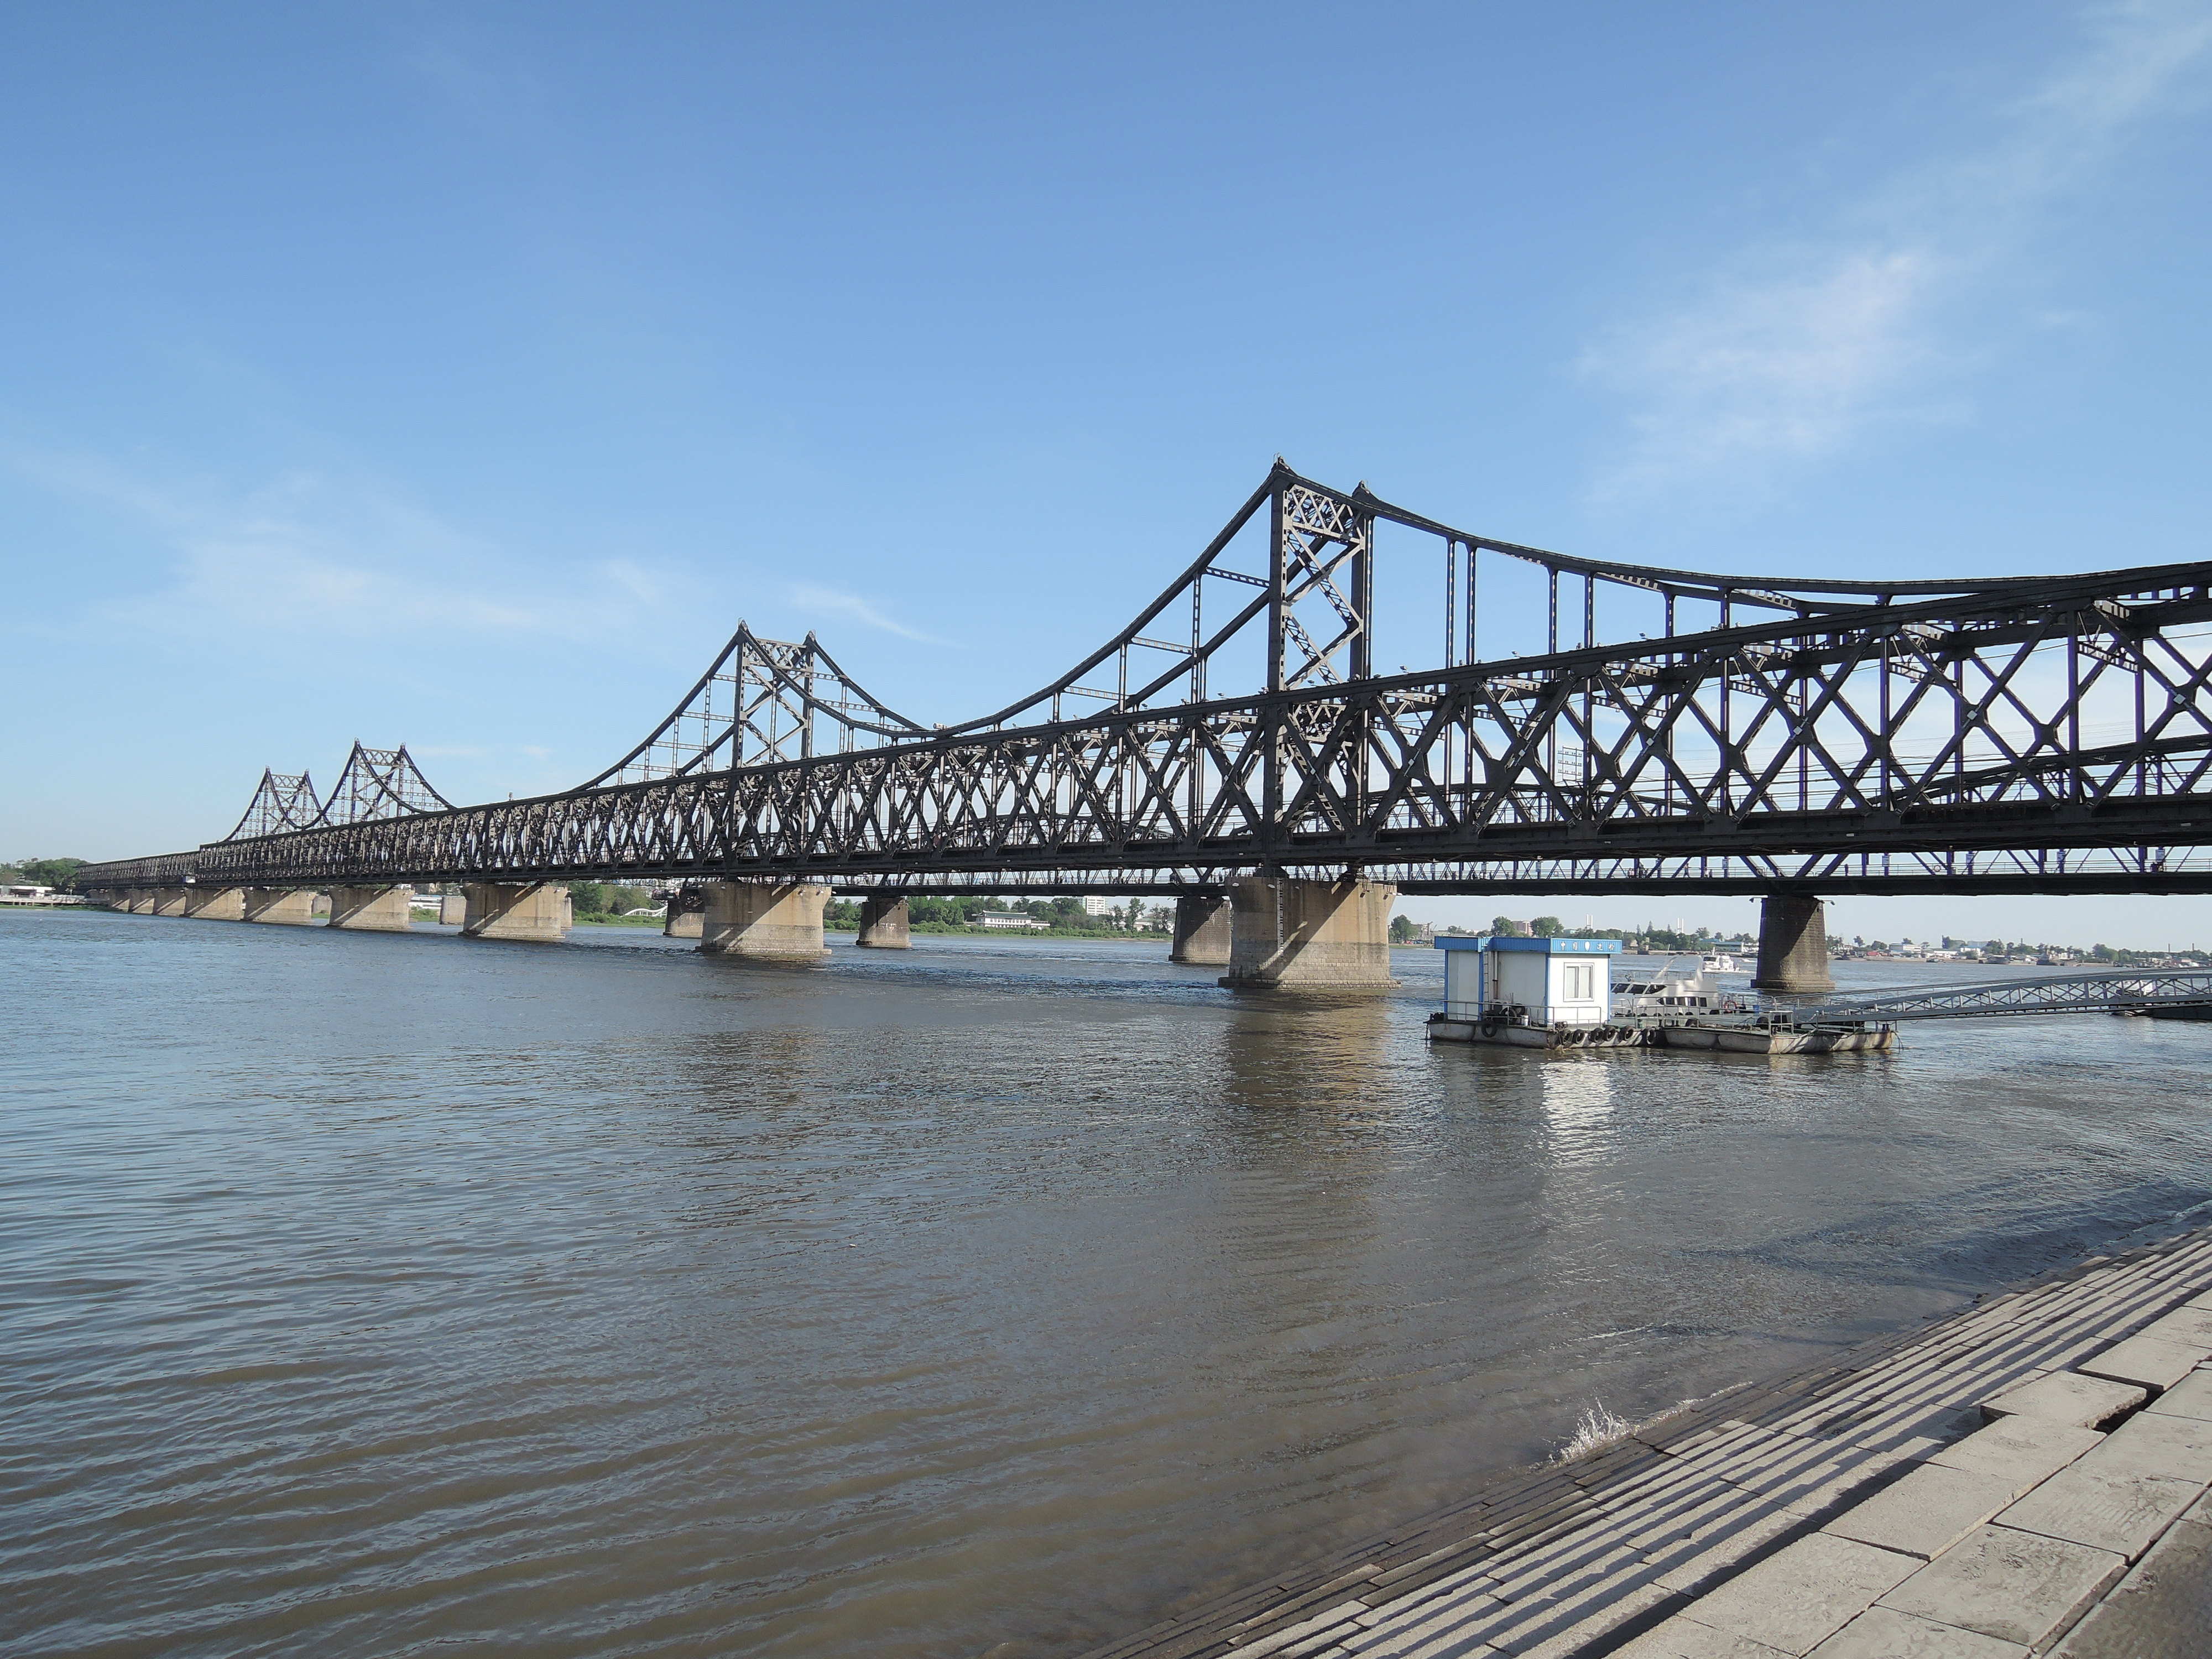 鸭绿江大桥旅游图片,鸭绿江大桥自助游图片,鸭绿江大桥旅游景点照片